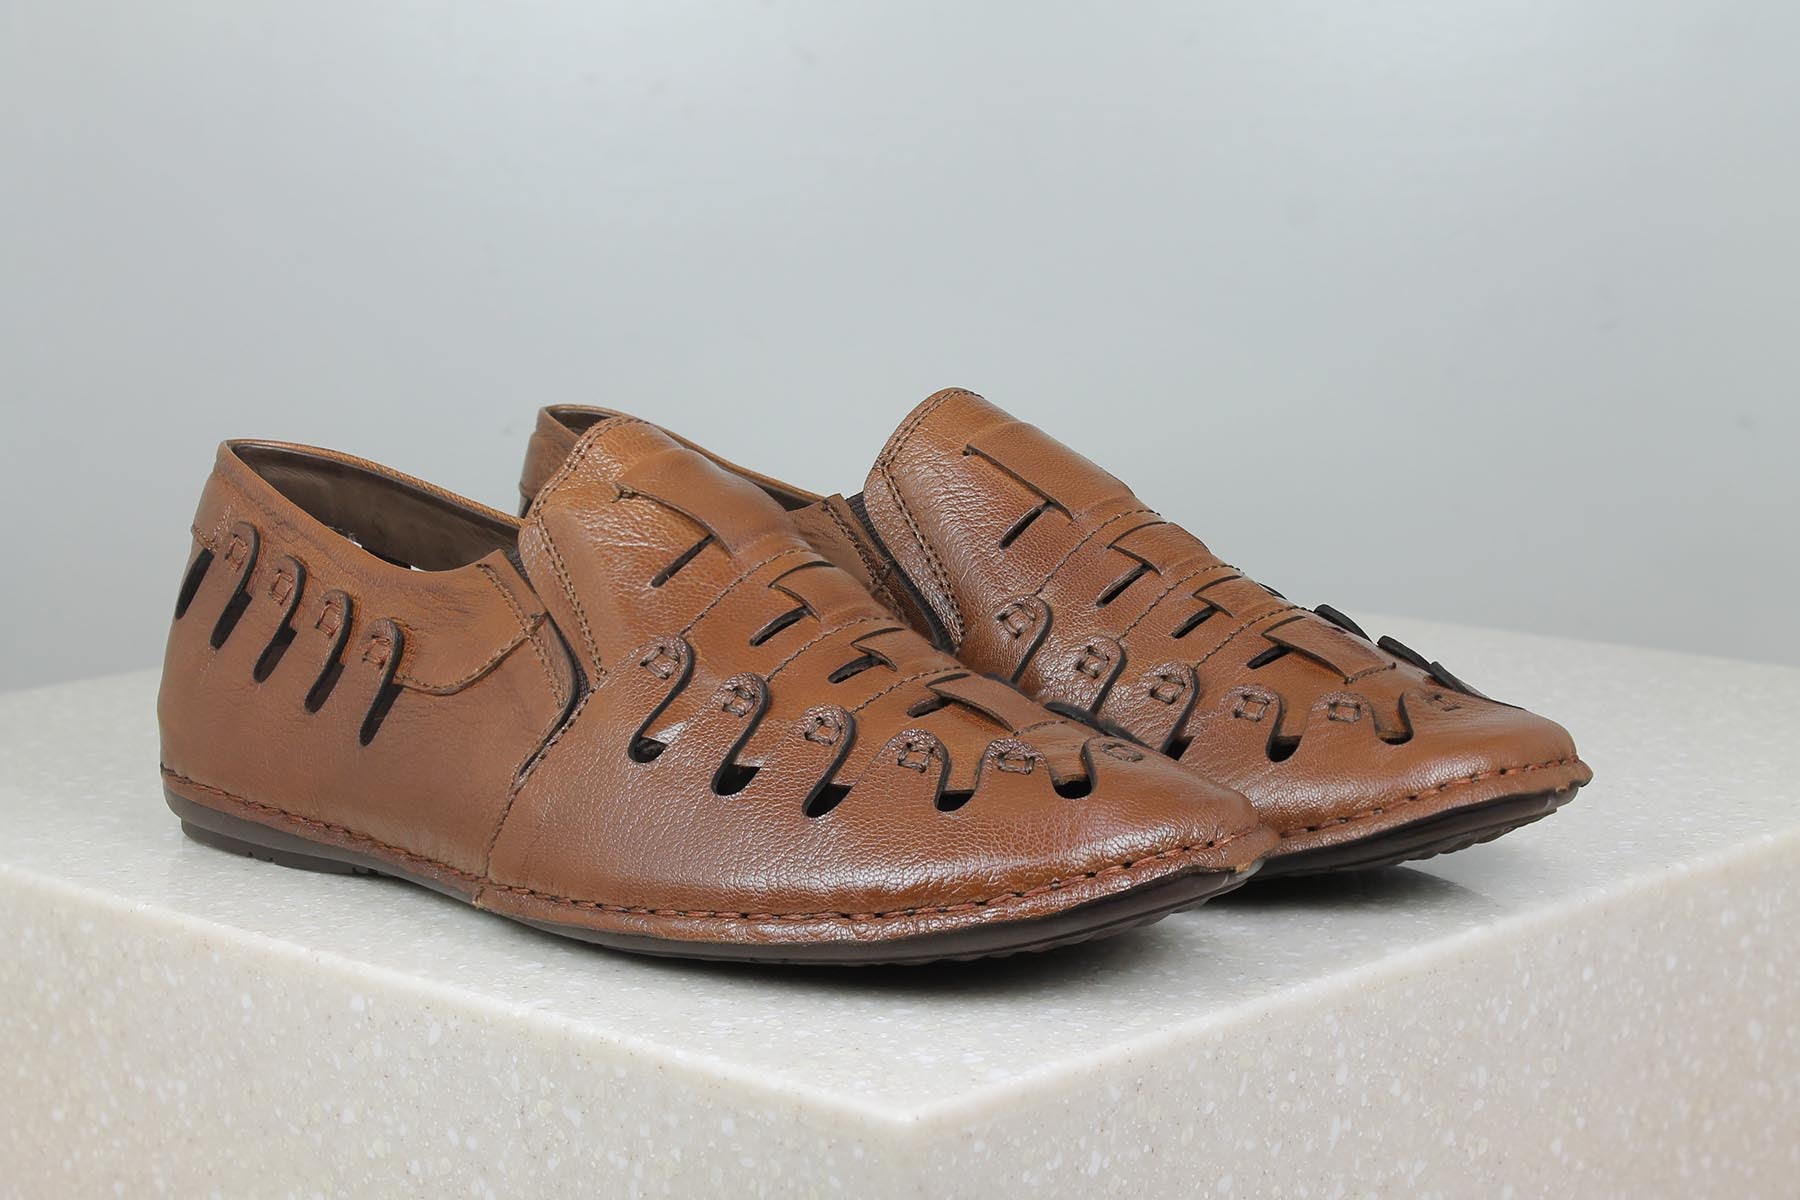 TRI-BAND SANDAL-TAN-Men's Sandal-Inc5 Shoes